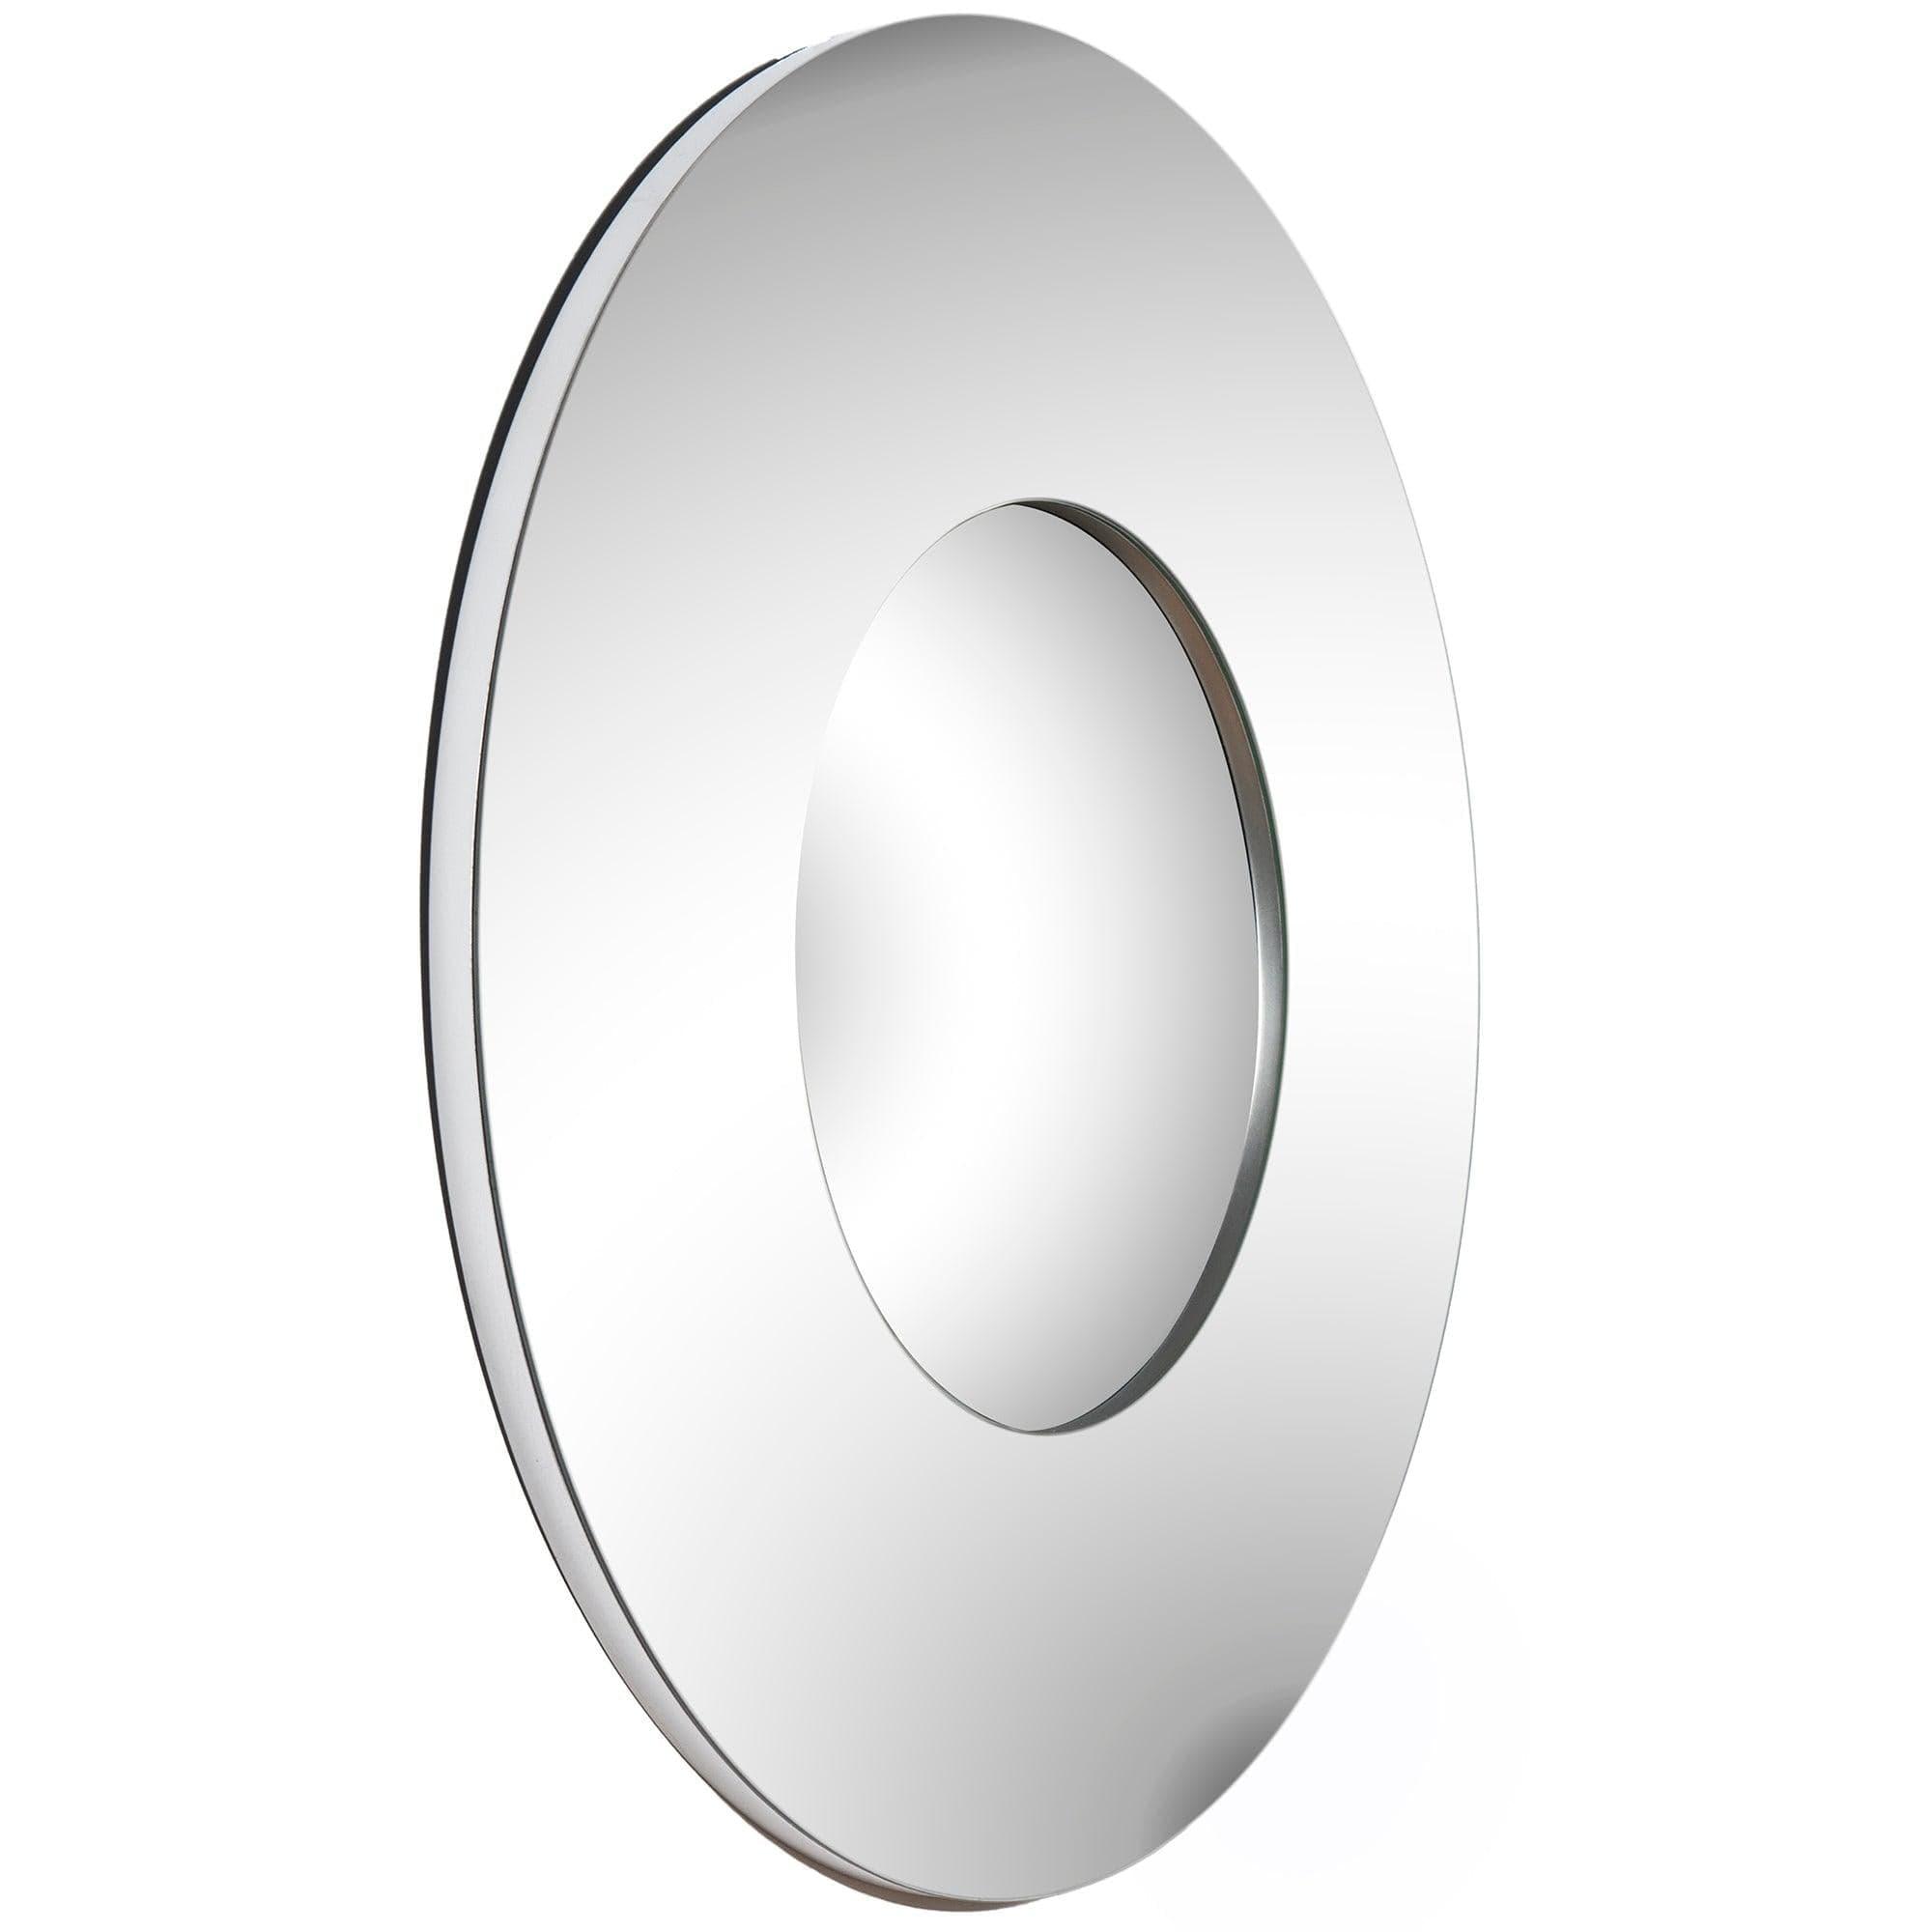 Renwil - Bangkok Round Mirror - MT779 | Montreal Lighting & Hardware